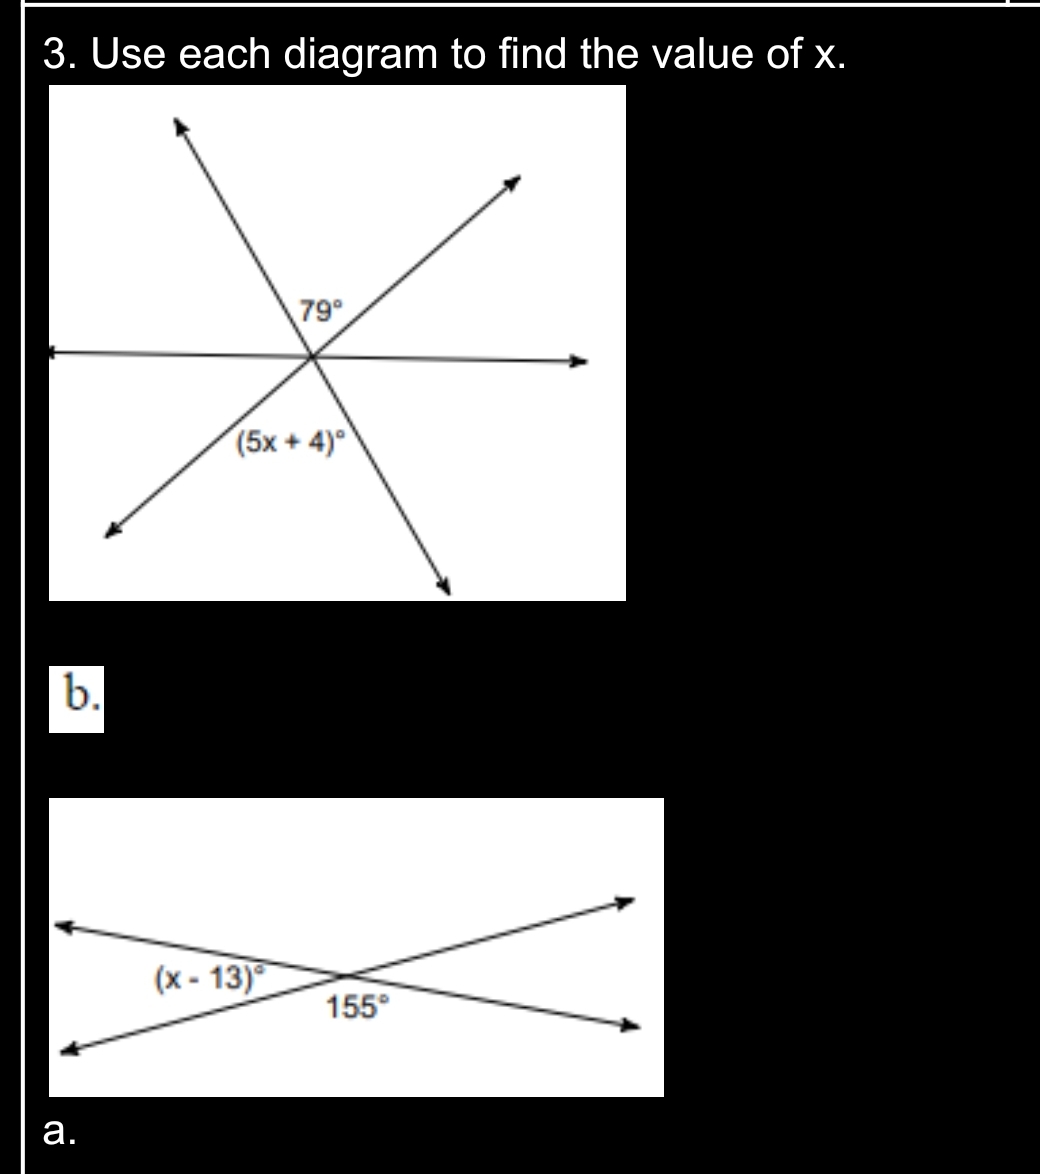 3. Use each diagram to find the value of x.
79°
(5x + 4)°
b.
(x - 13)
155°
а.
